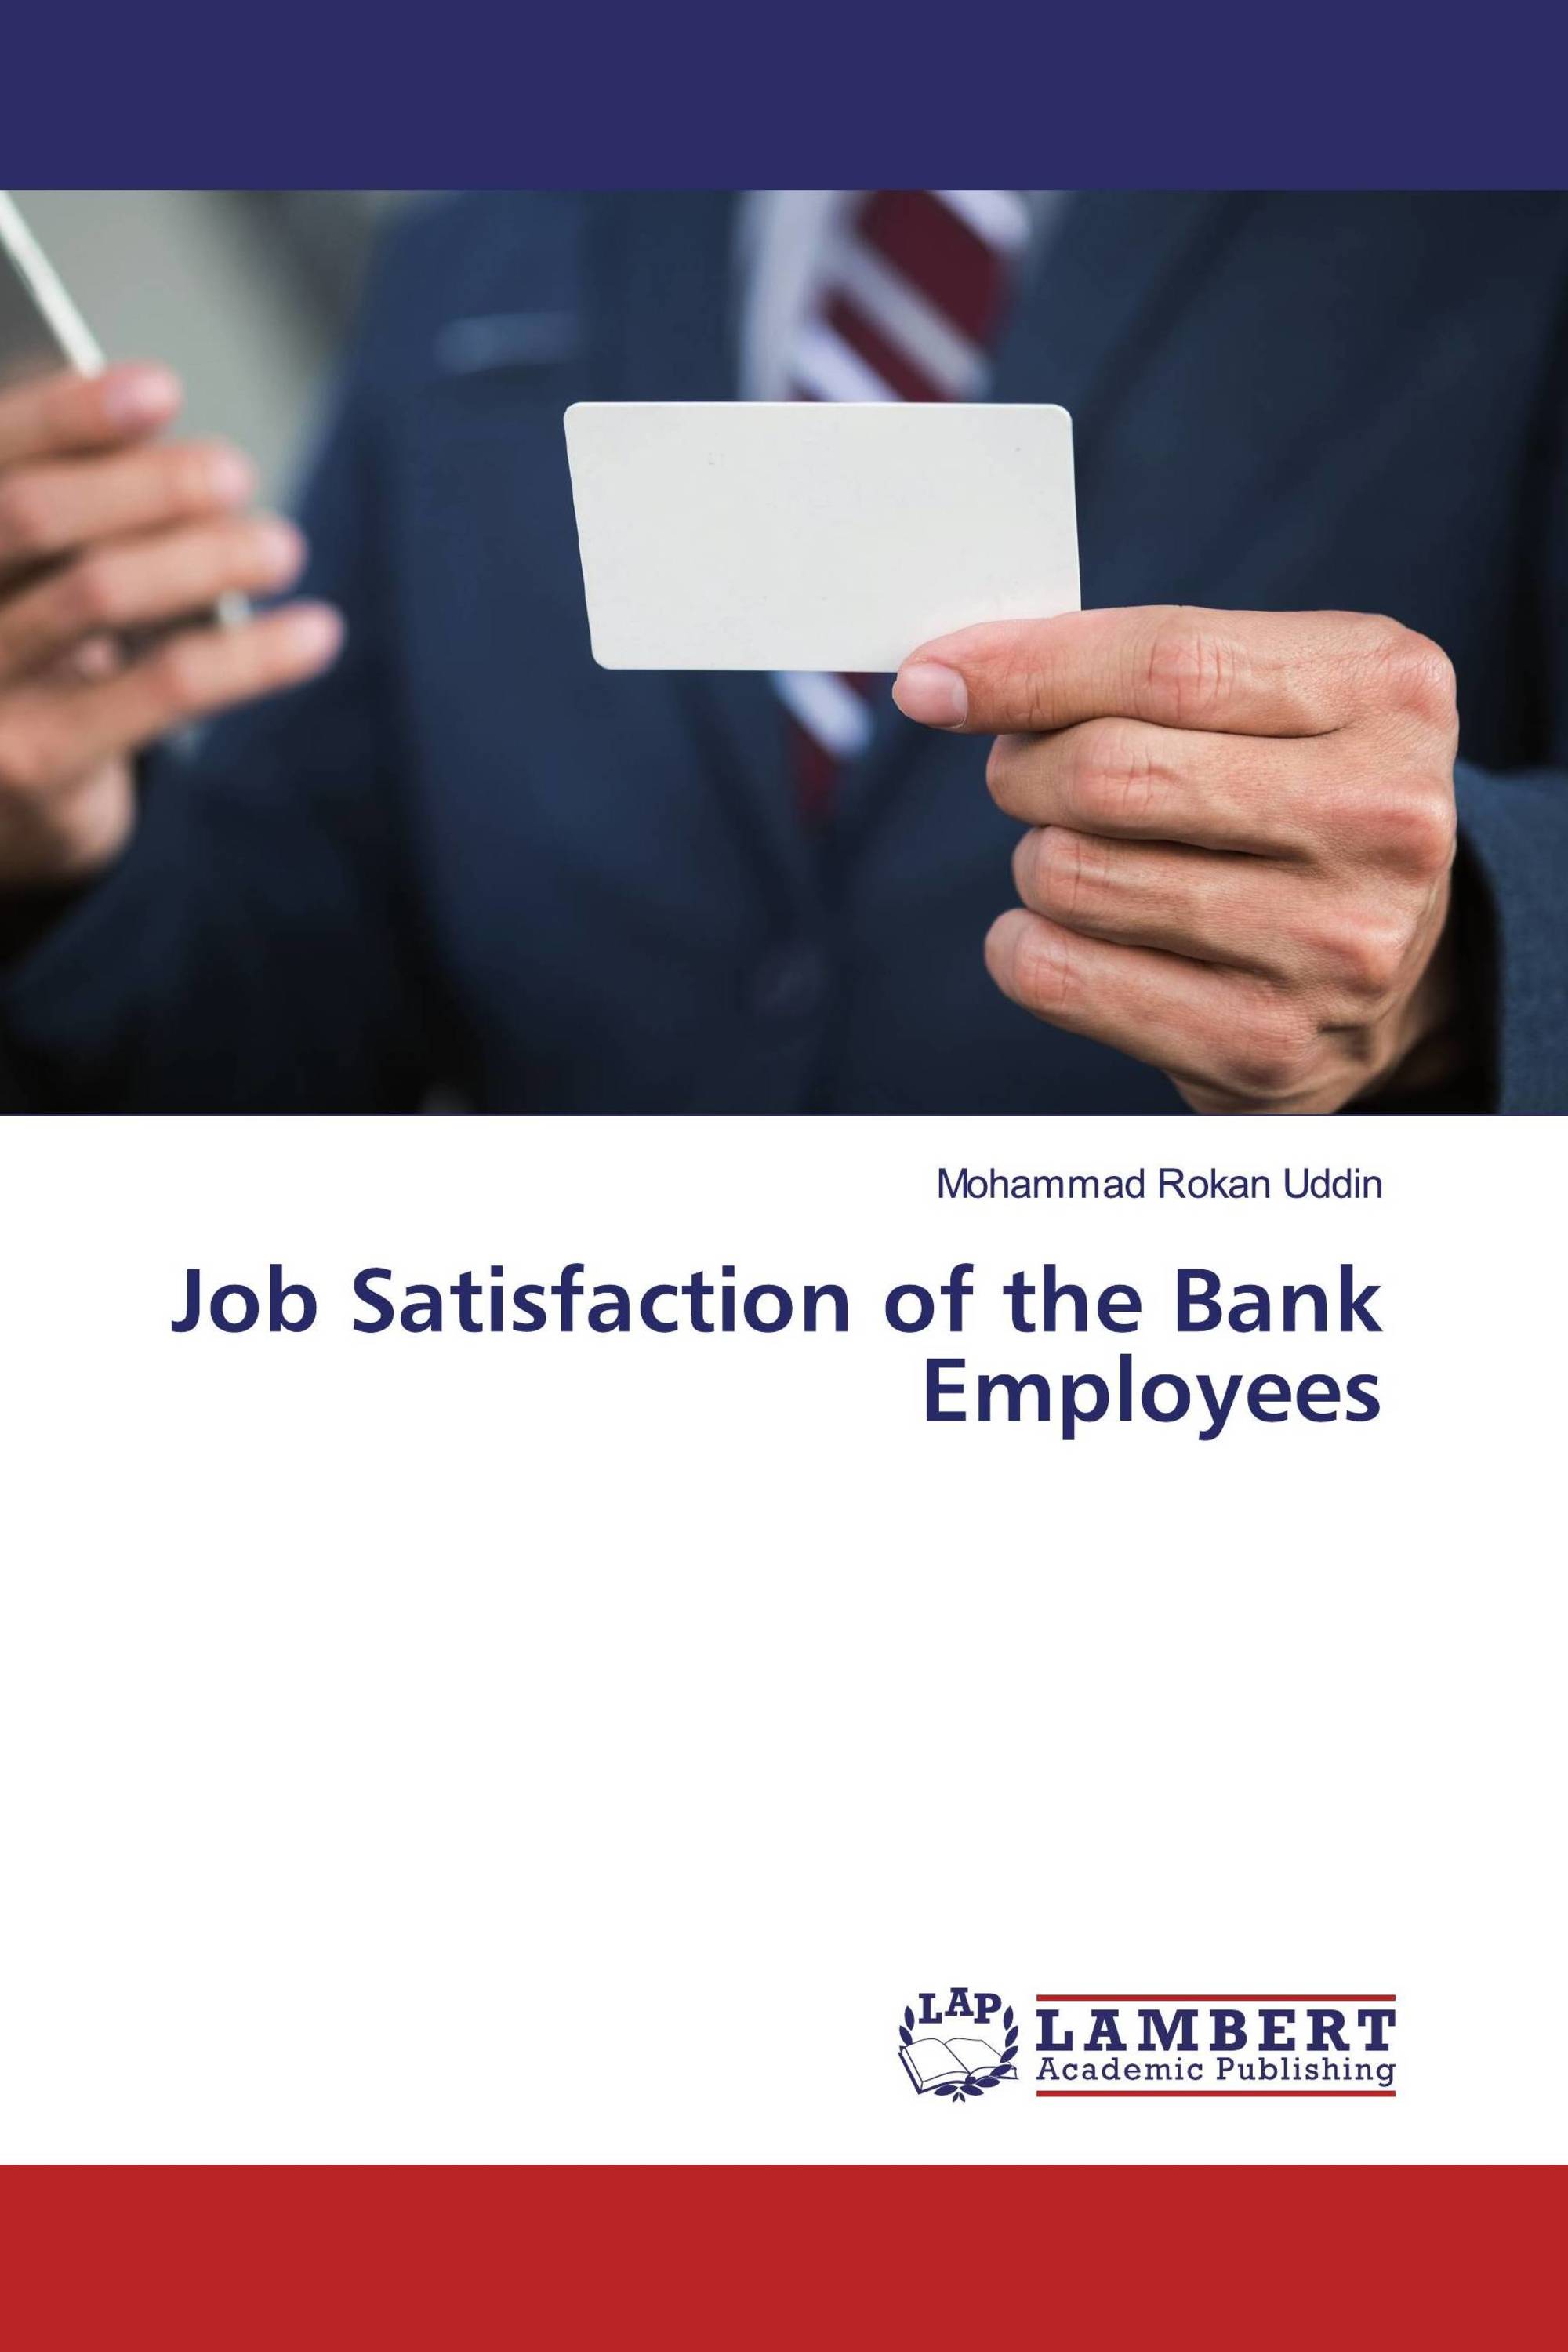 Study of job satisfaction of bank employees